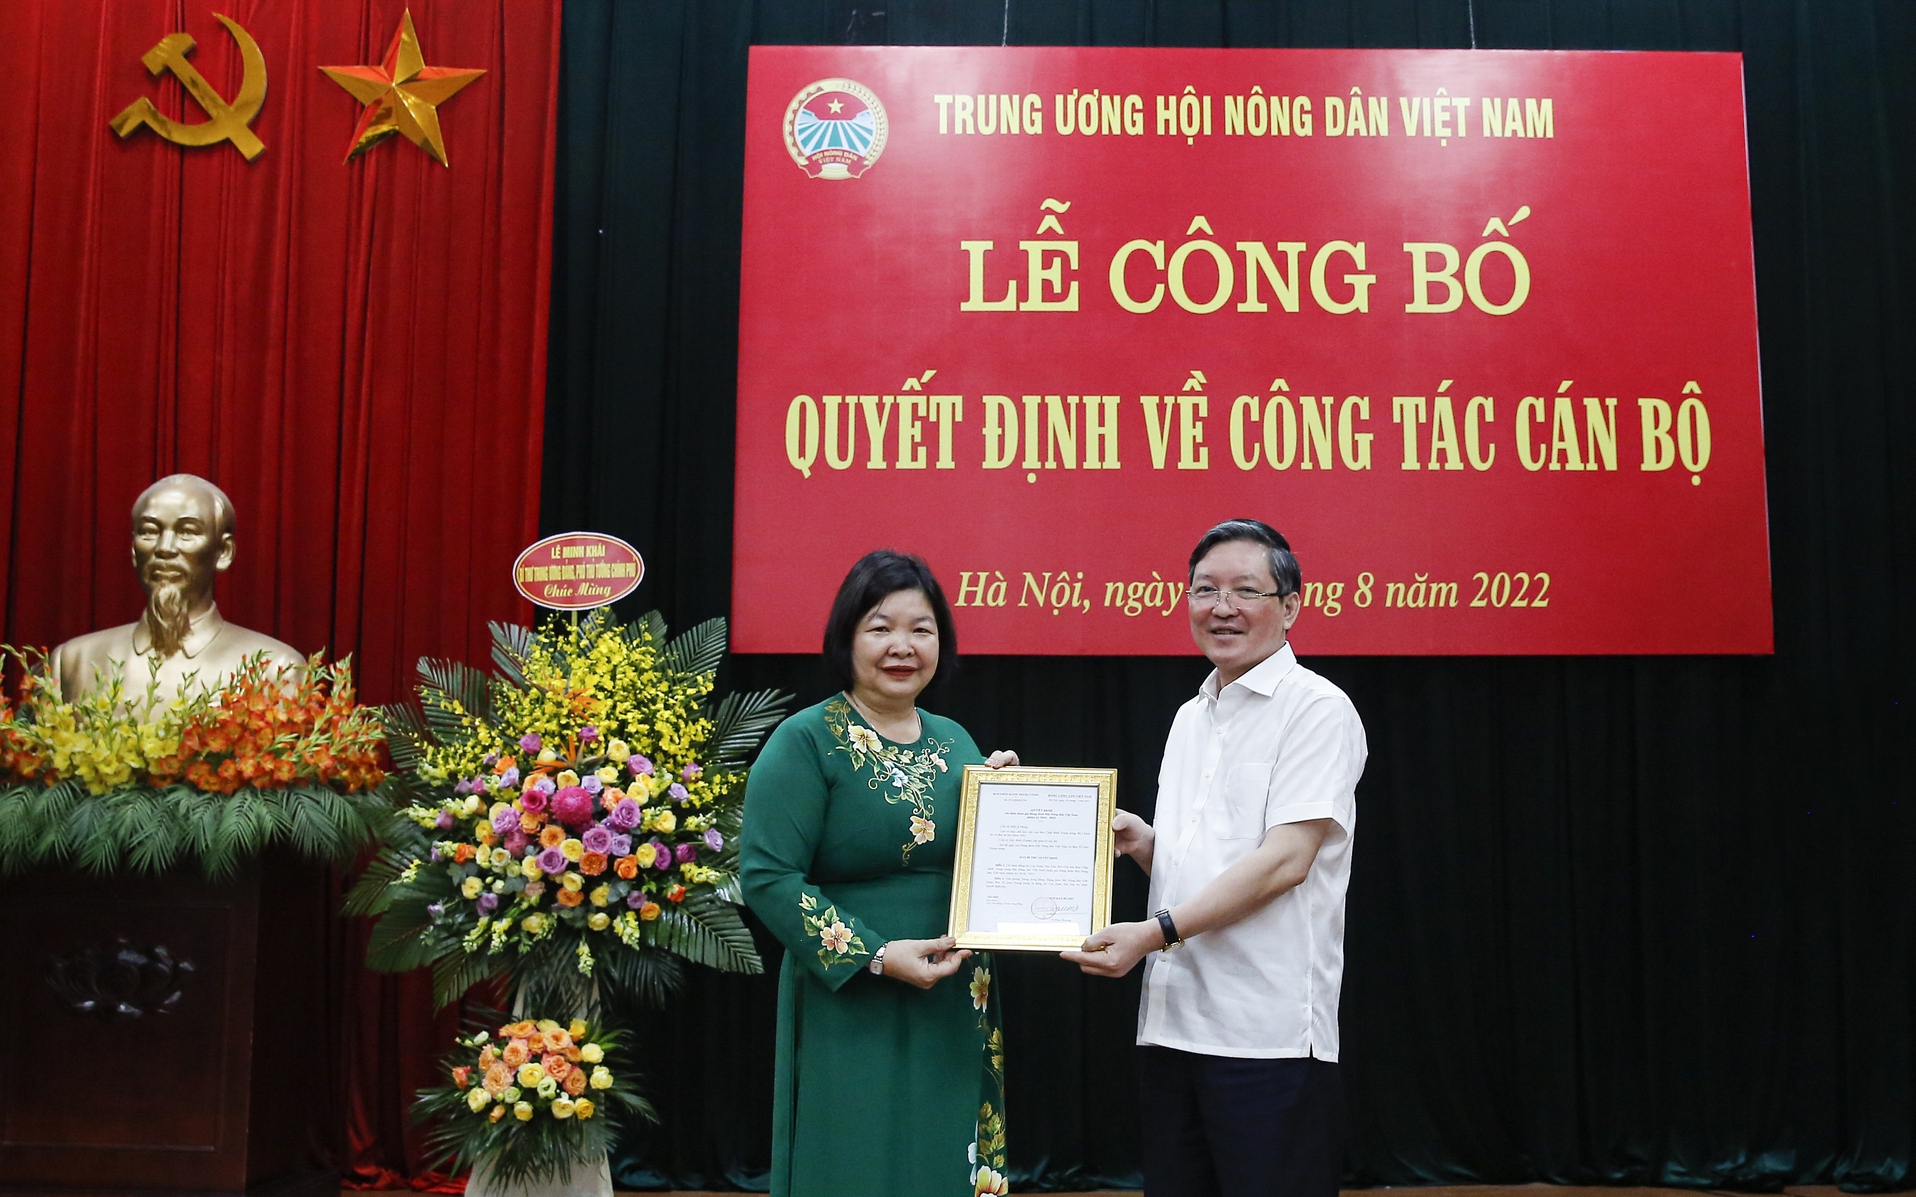 Chính thức phân công bà Cao Xuân Thu Vân tham gia Đảng đoàn Hội Nông dân Việt Nam